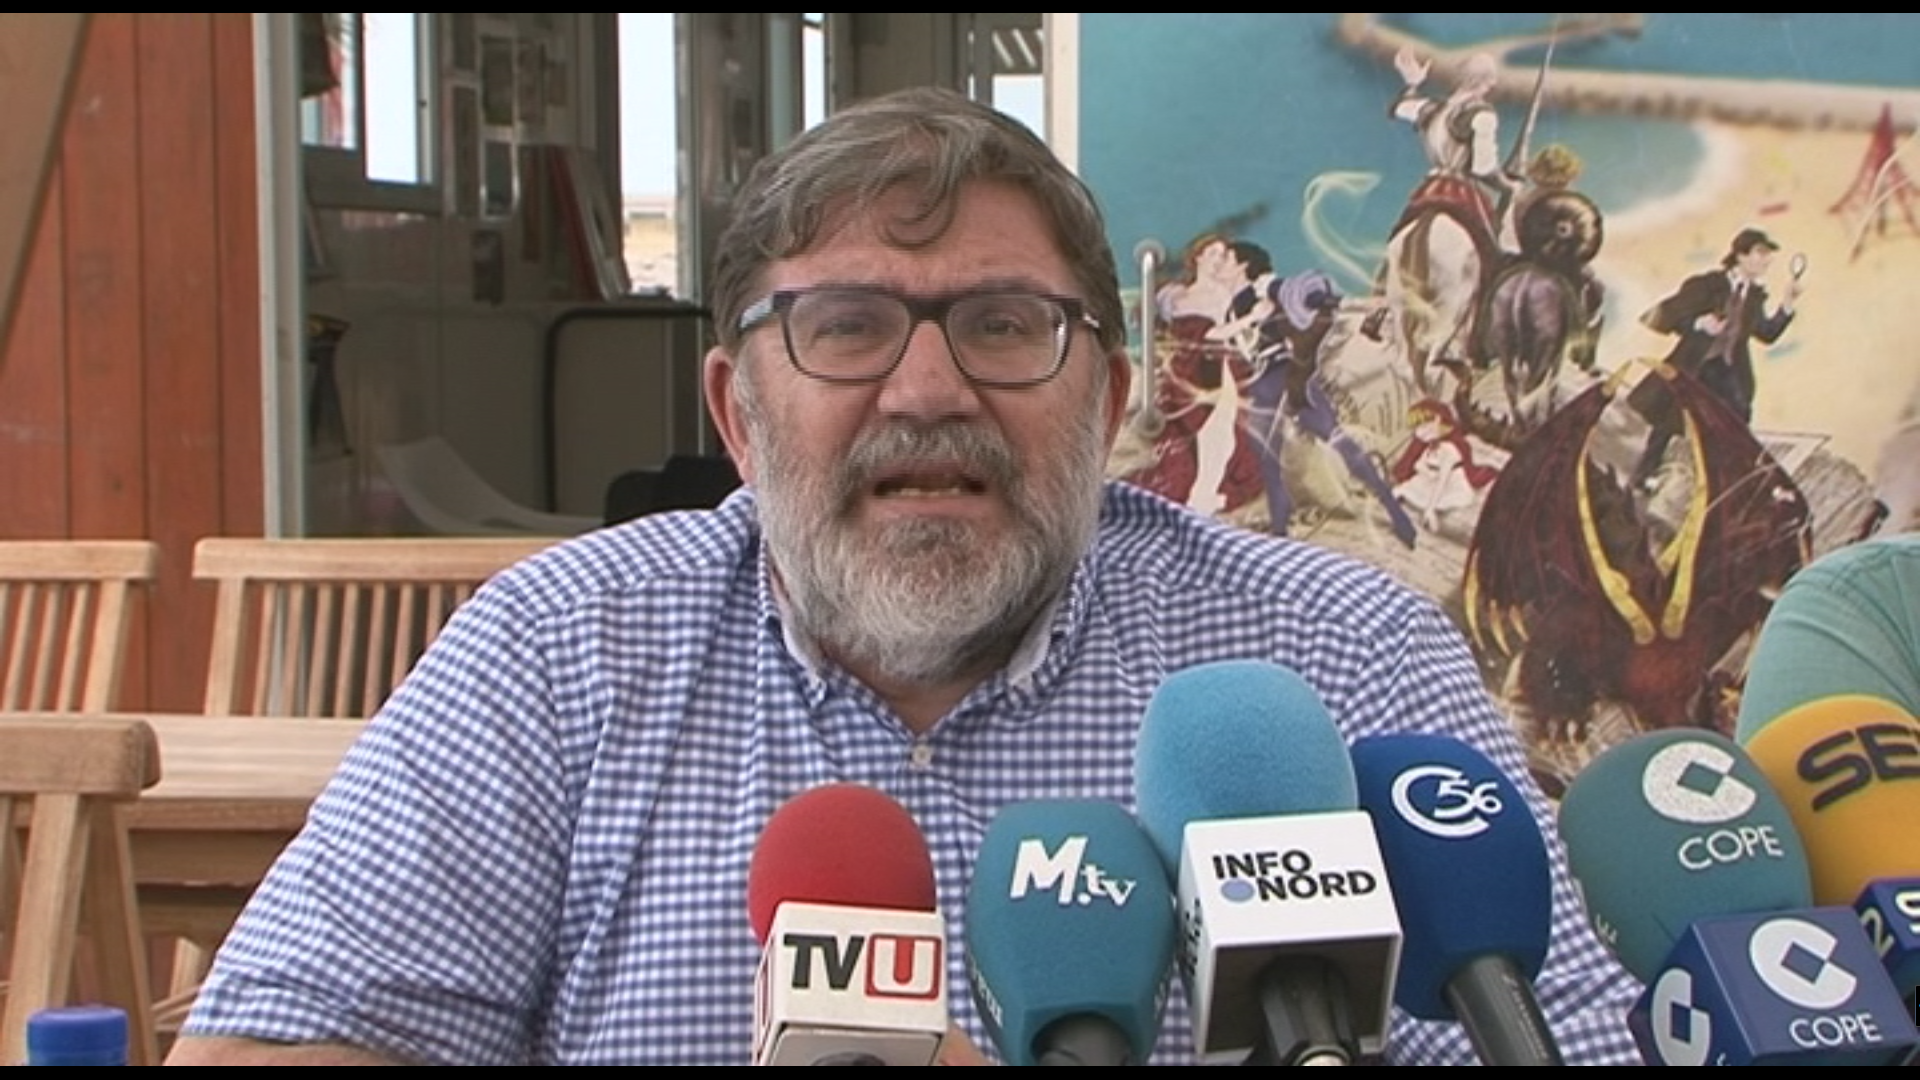 Vinaròs, l'alcalde Pla respon al PP assegurant el nou estudi de Turisme marca les línies a seguir